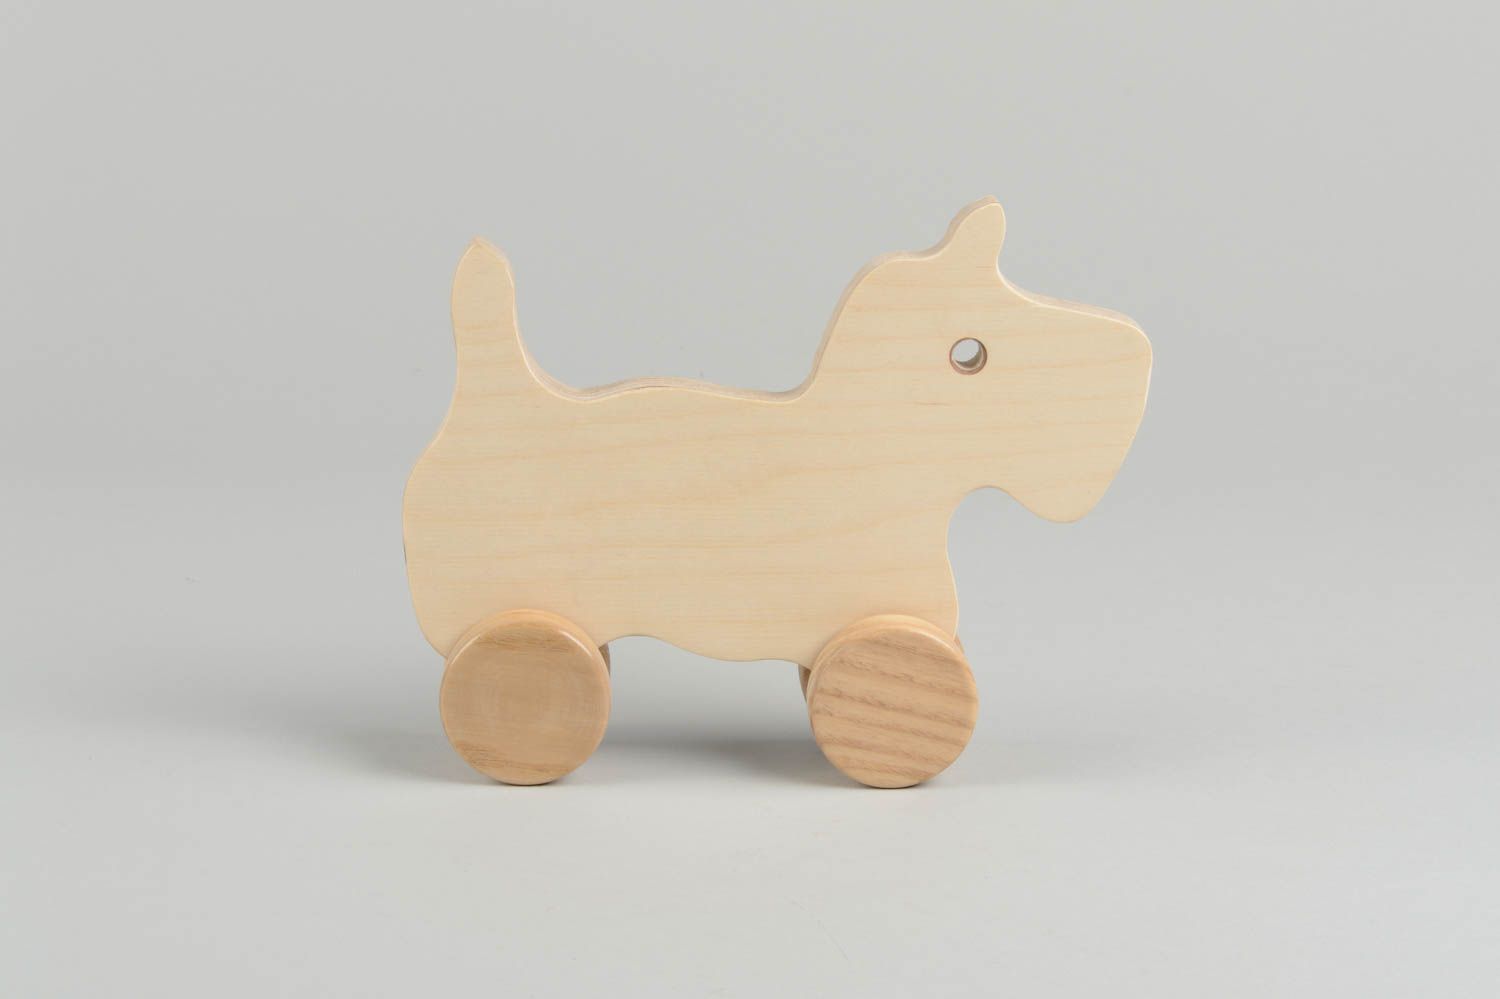 Игрушка ручной работы игрушка из дерева ясеня игрушка каталка Животное фото 2